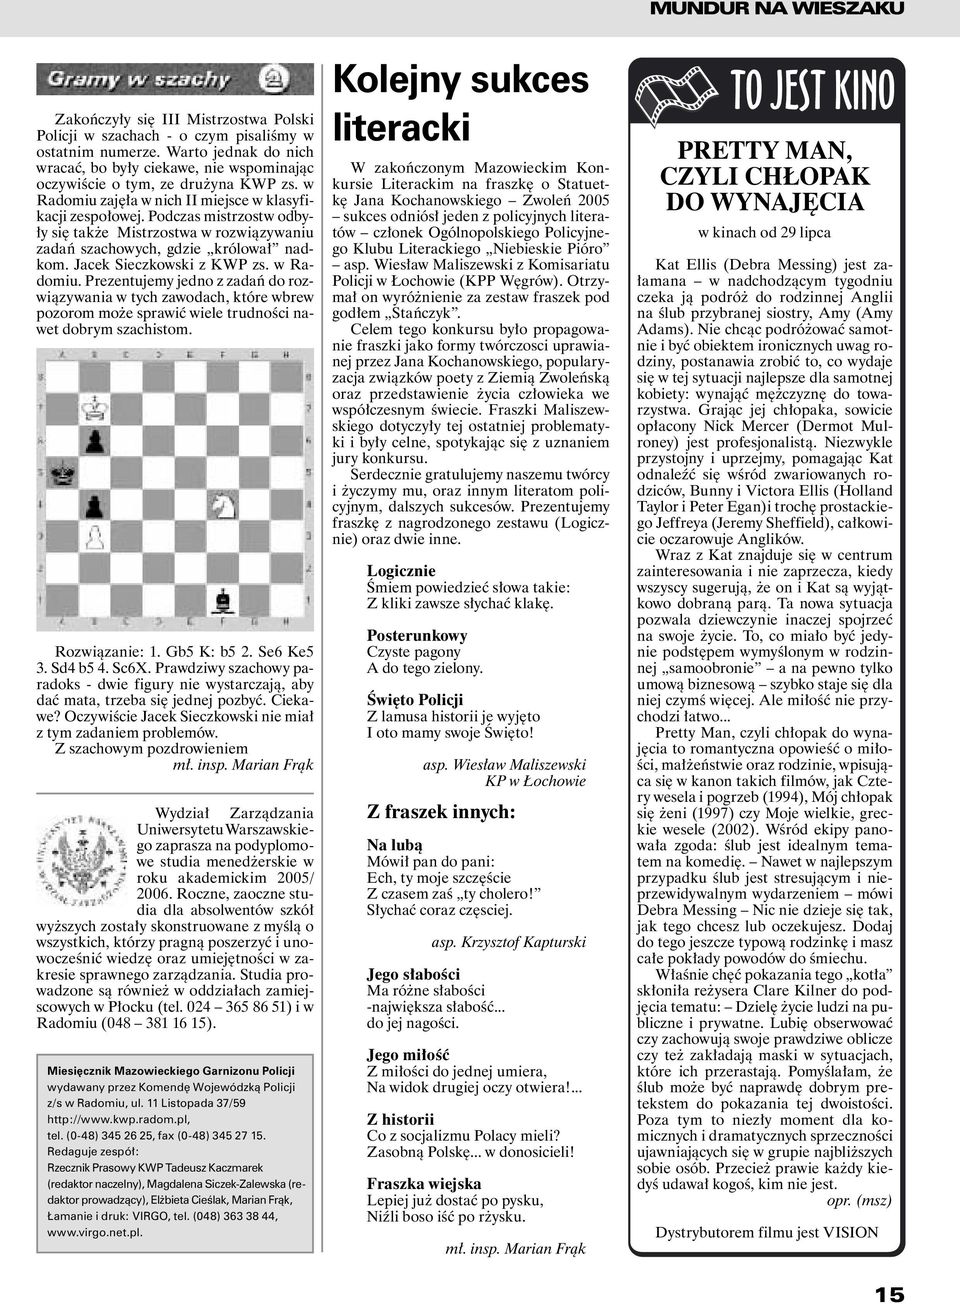 Podczas mistrzostw odbyły się także Mistrzostwa w rozwiązywaniu zadań szachowych, gdzie królował nadkom. Jacek Sieczkowski z KWP zs. w Radomiu.